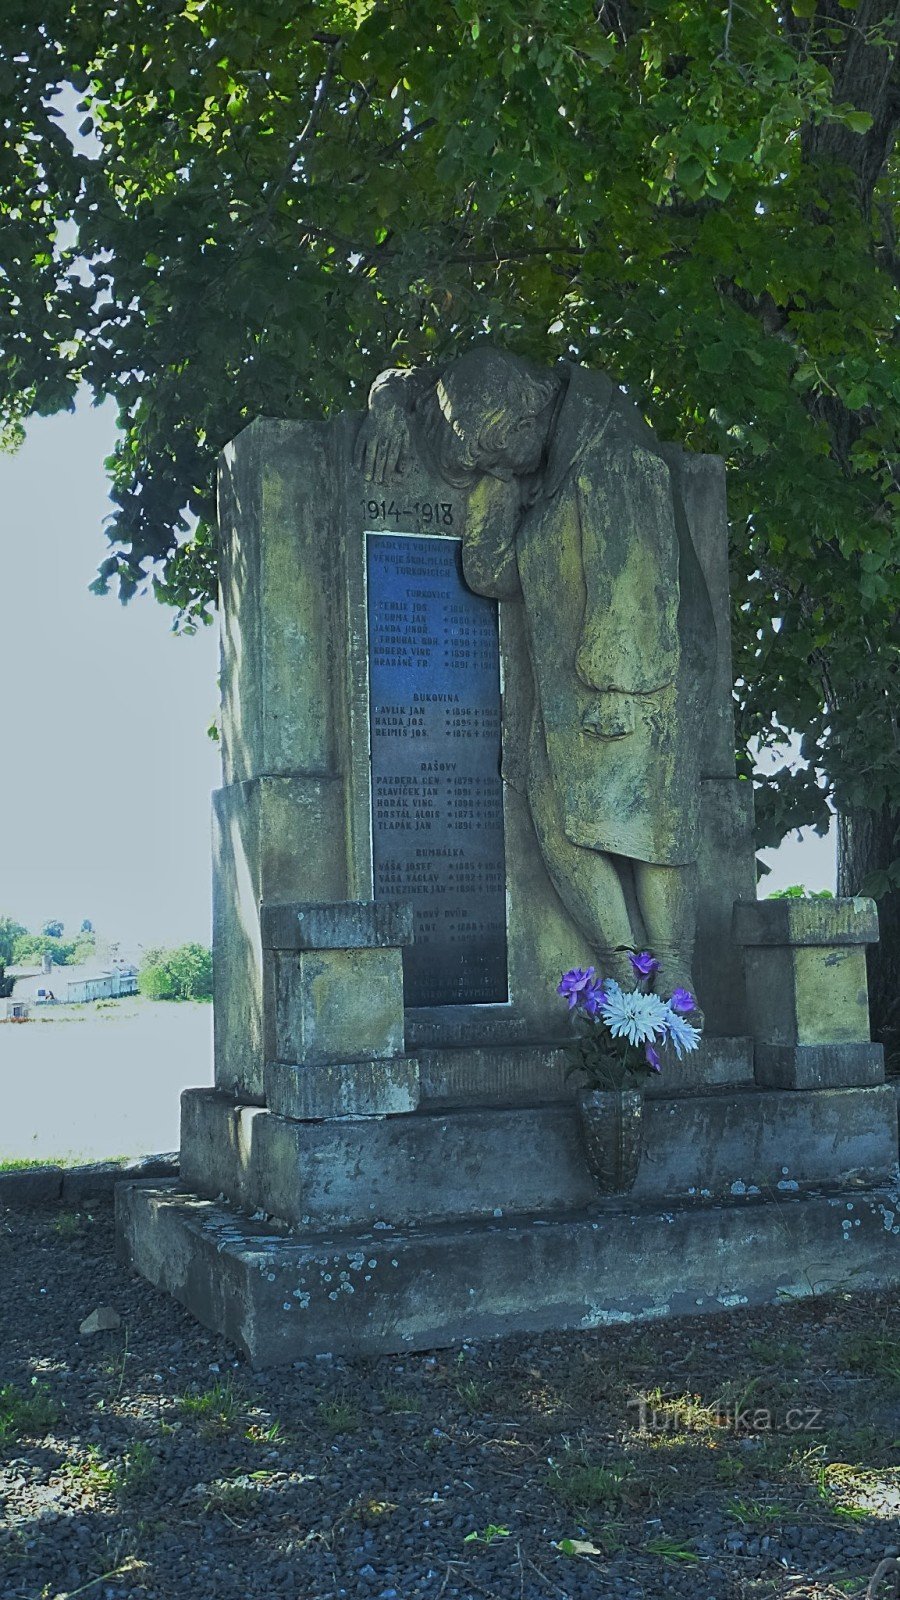 Auf dem Denkmal sind 19 Namen gefallener Soldaten aus den umliegenden Dörfern eingraviert